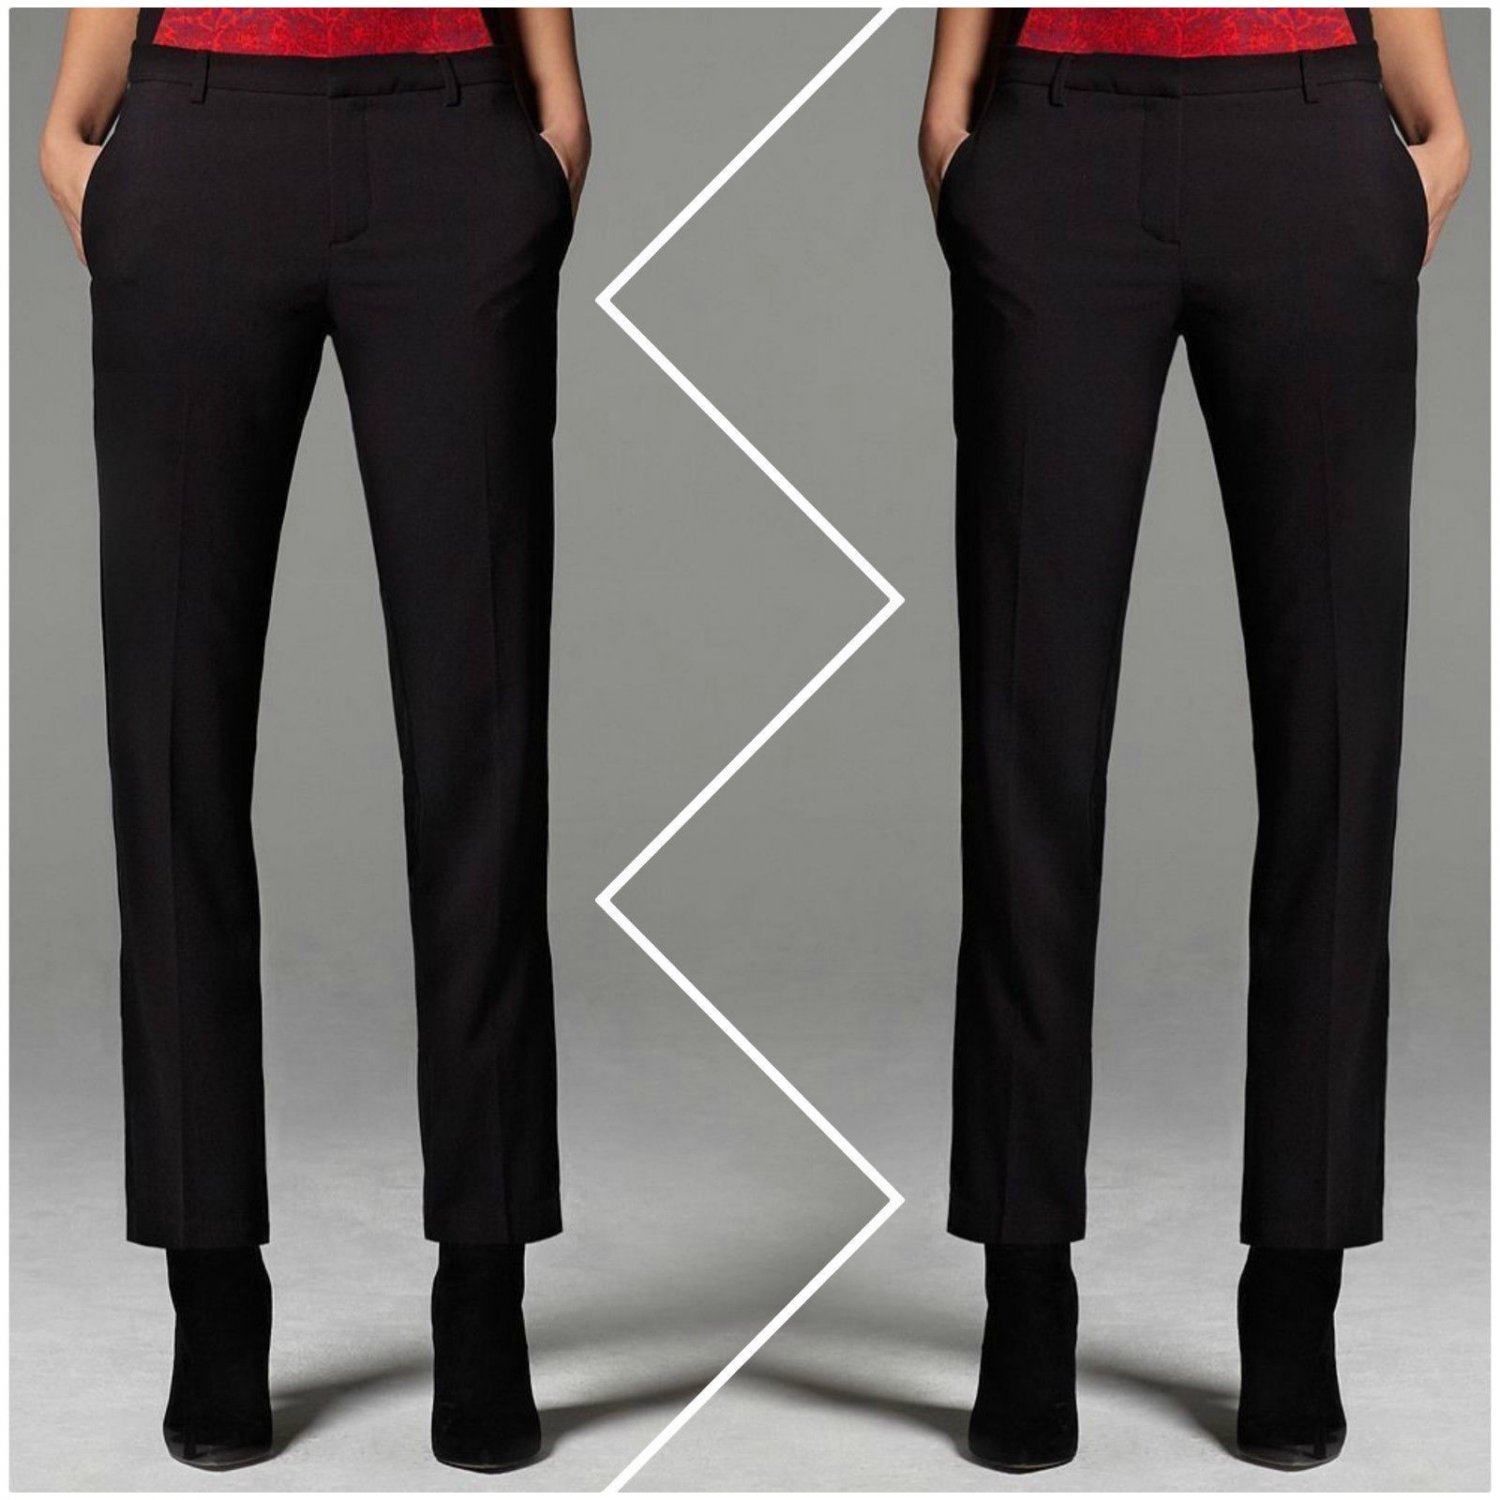 Narciso Rodriguez For Designation Black Crepe Tuxedo Pants Size 10